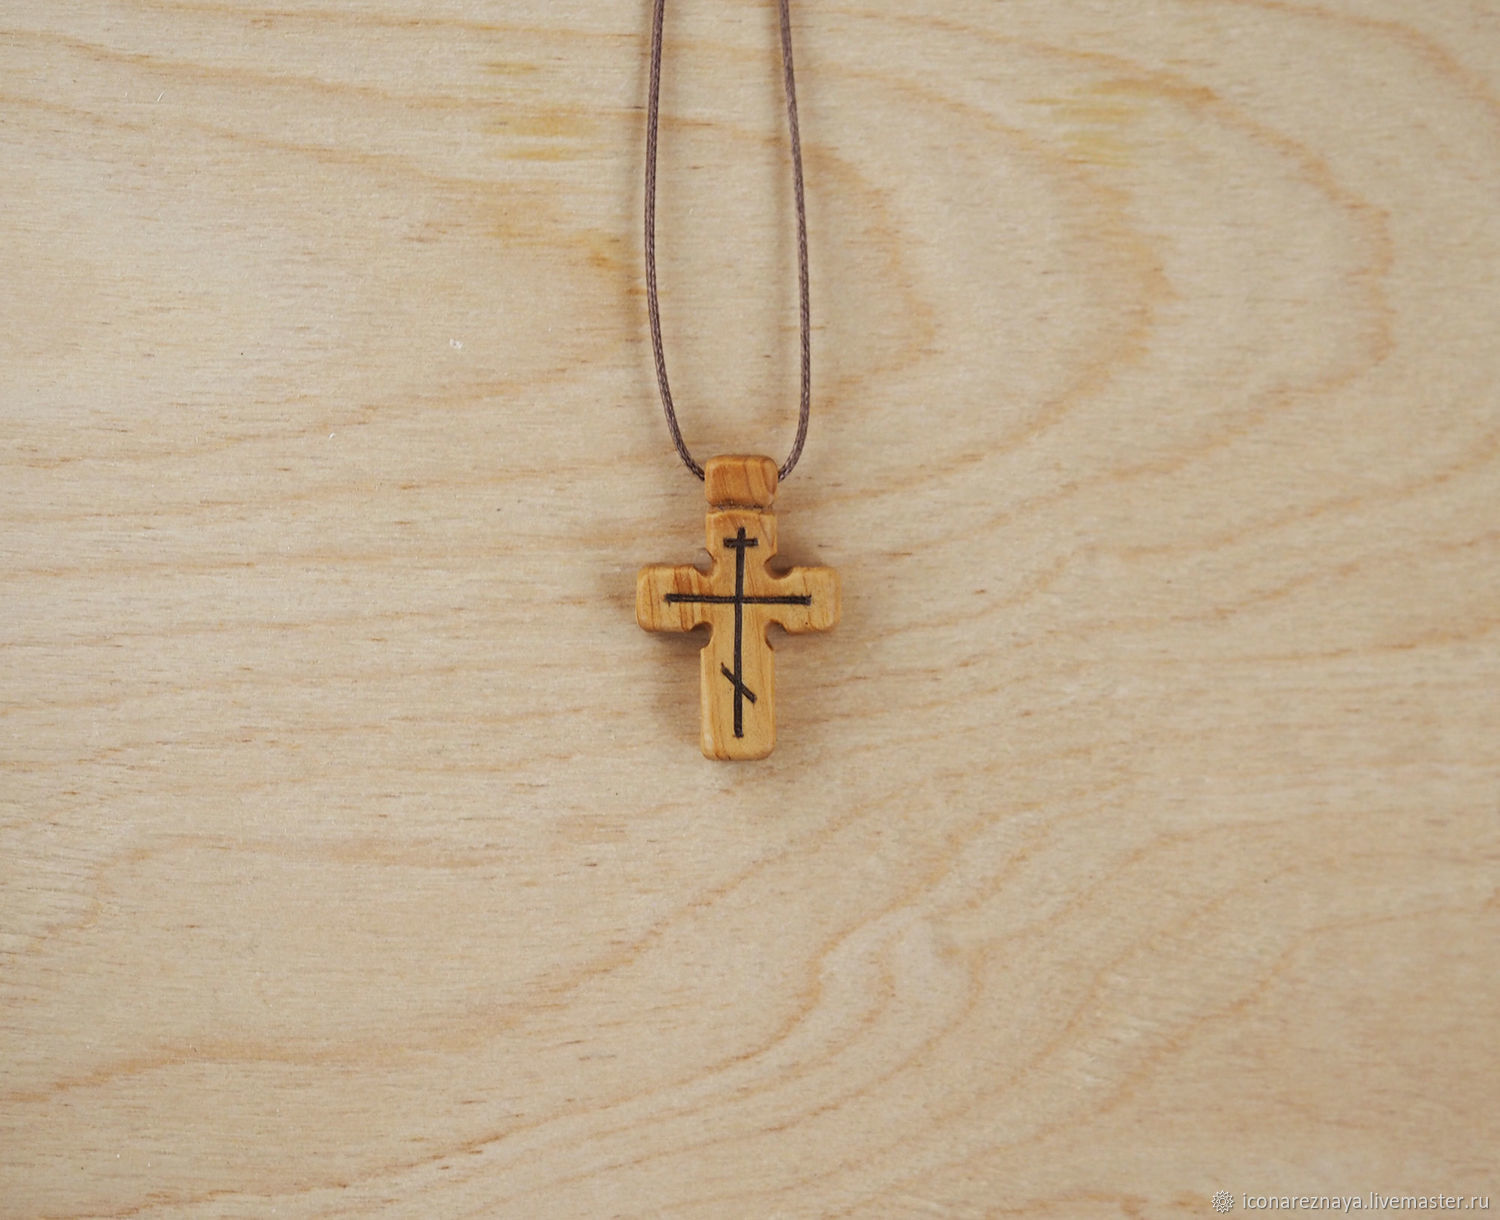 Православные нательные деревянные. Деревянный крестик. Крест нательный деревянный. Крестик православный деревянный. Крестик деревянный нательный православный.